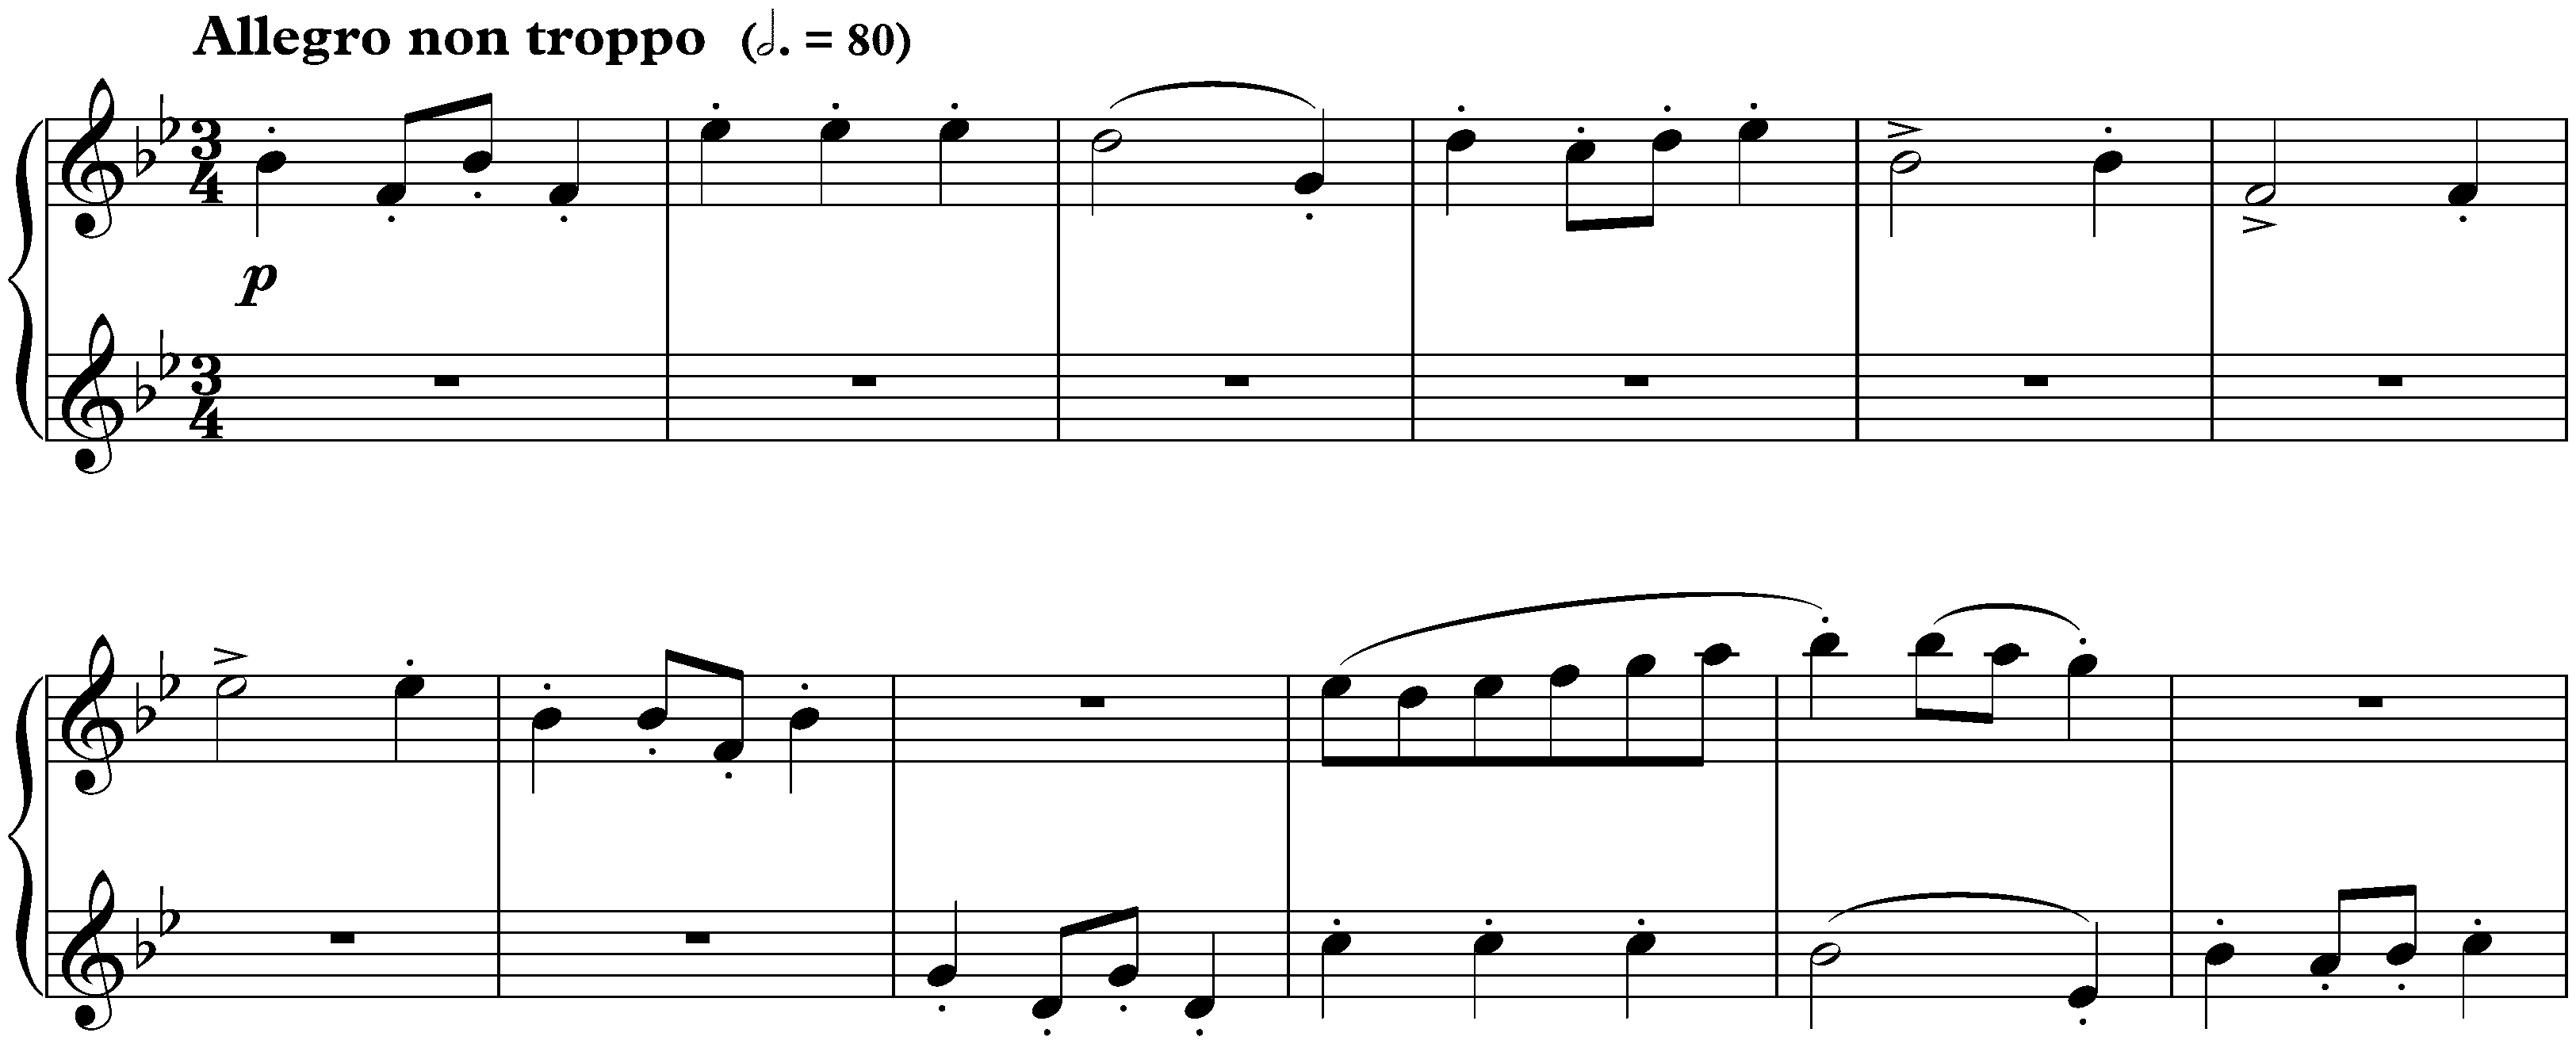 Twenty-four Preludes and Fugues, op. 87; 21. B-flat major, Fugue